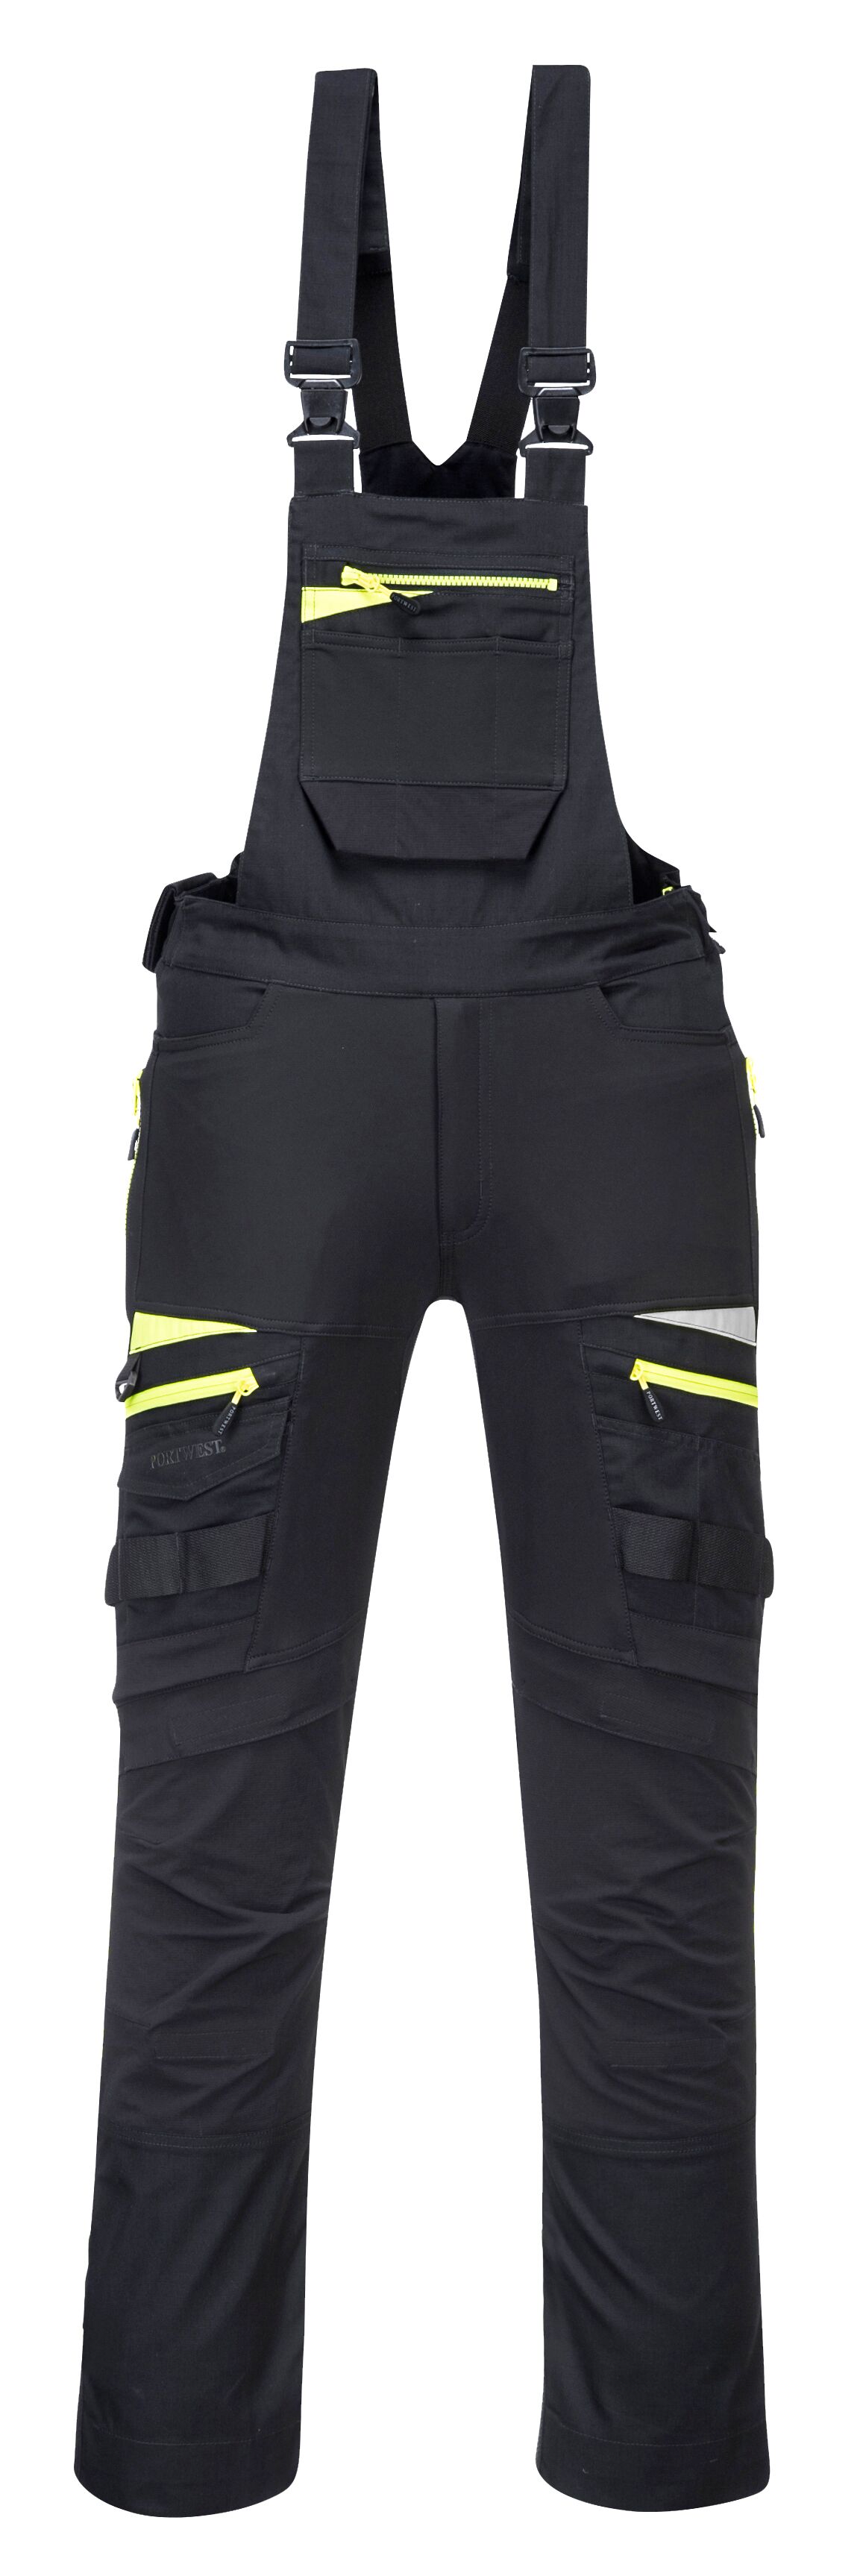 DX4 pracovní laclové kalhoty Barva: černá, Velikost: 3XL